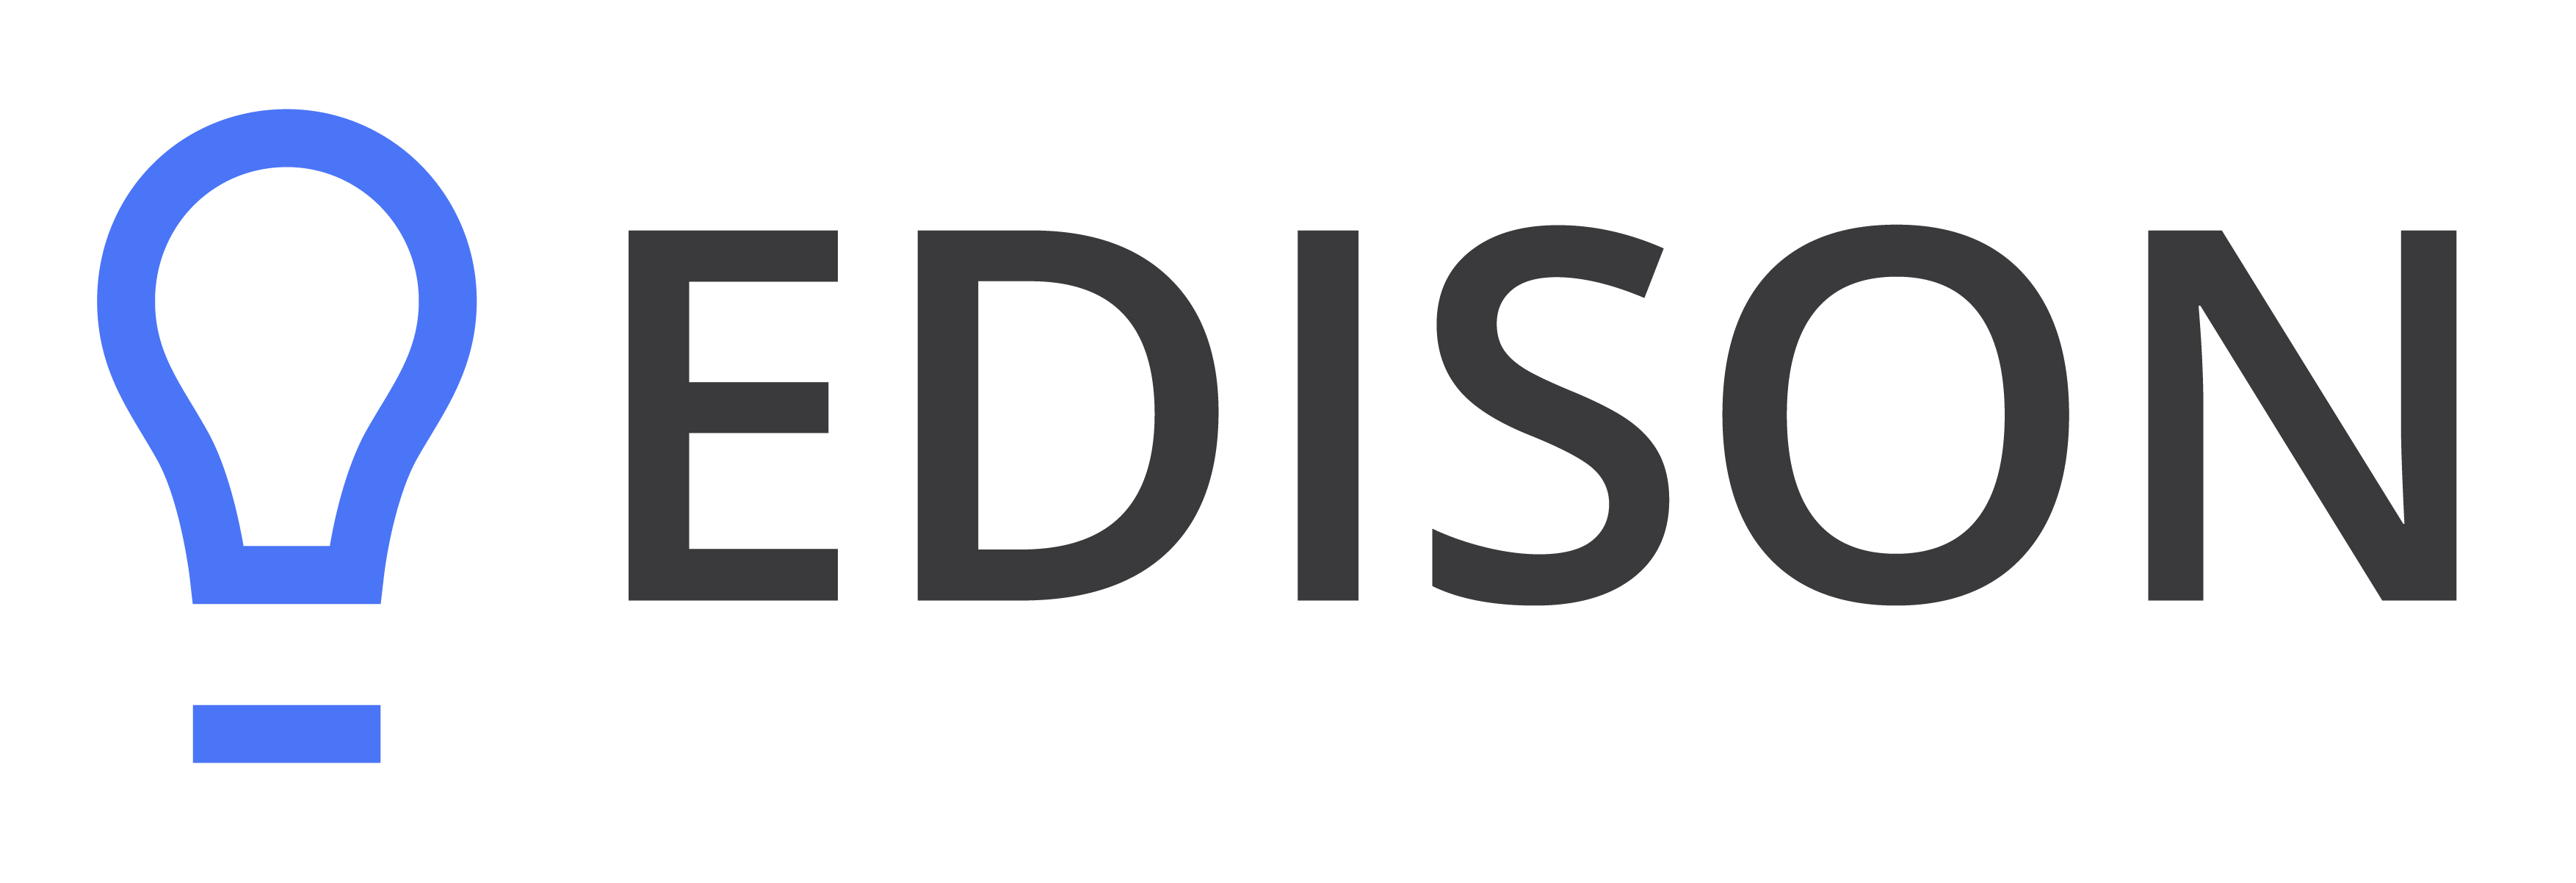 Edison надпись. Эдисон лого. Компания Эдисона. Edison Company logo. Эдисо